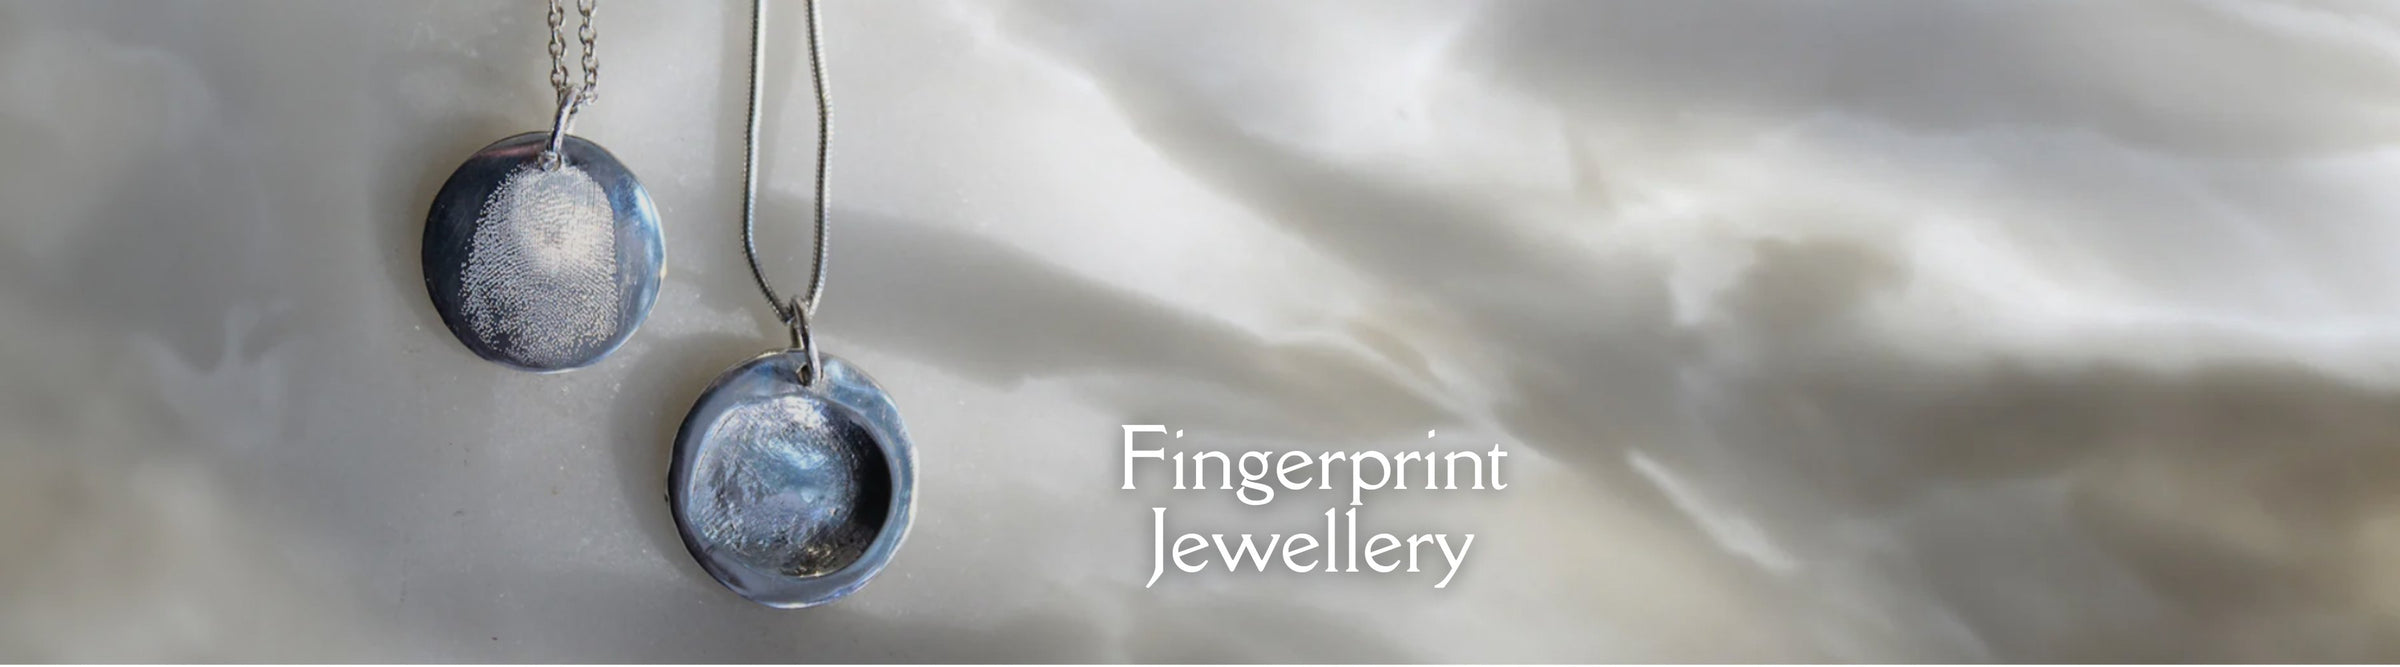 fingerprint jewellery banner image